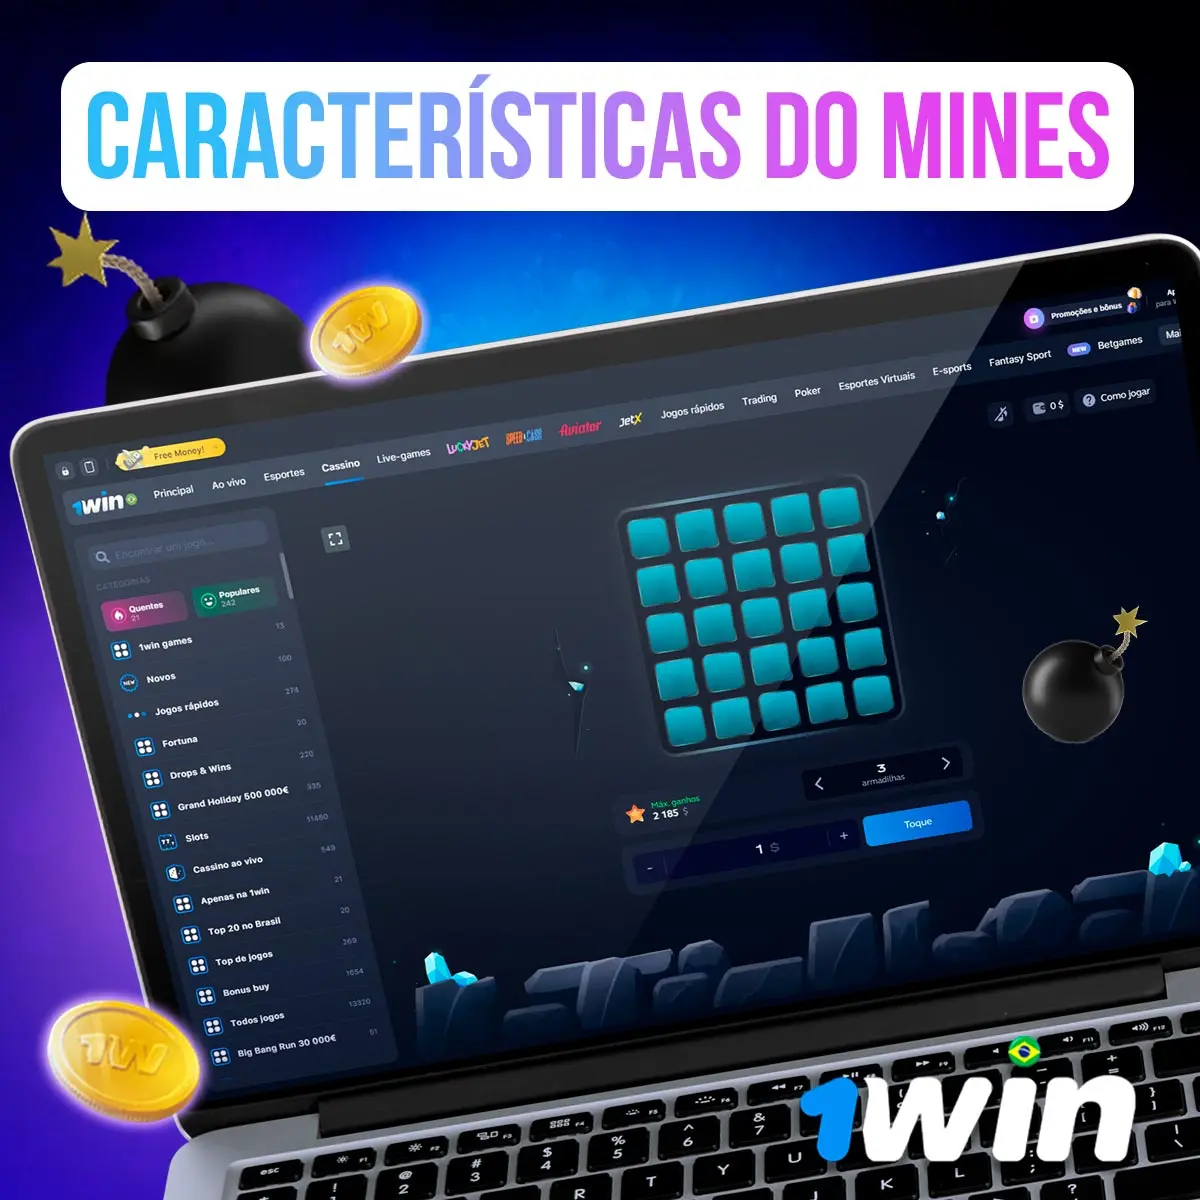 Mines Aposta Online, Jogo da Bombinha